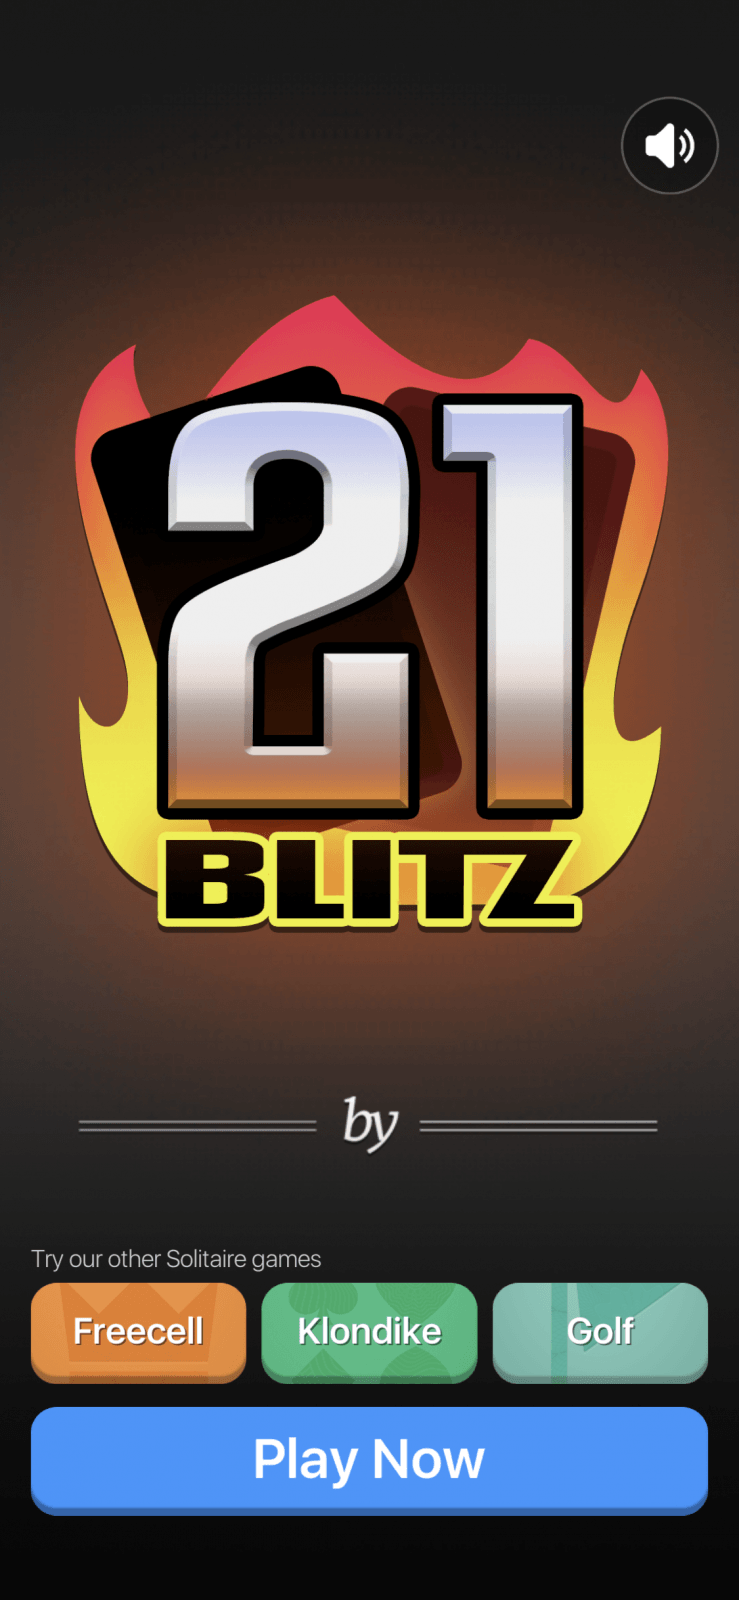 21 Blitz